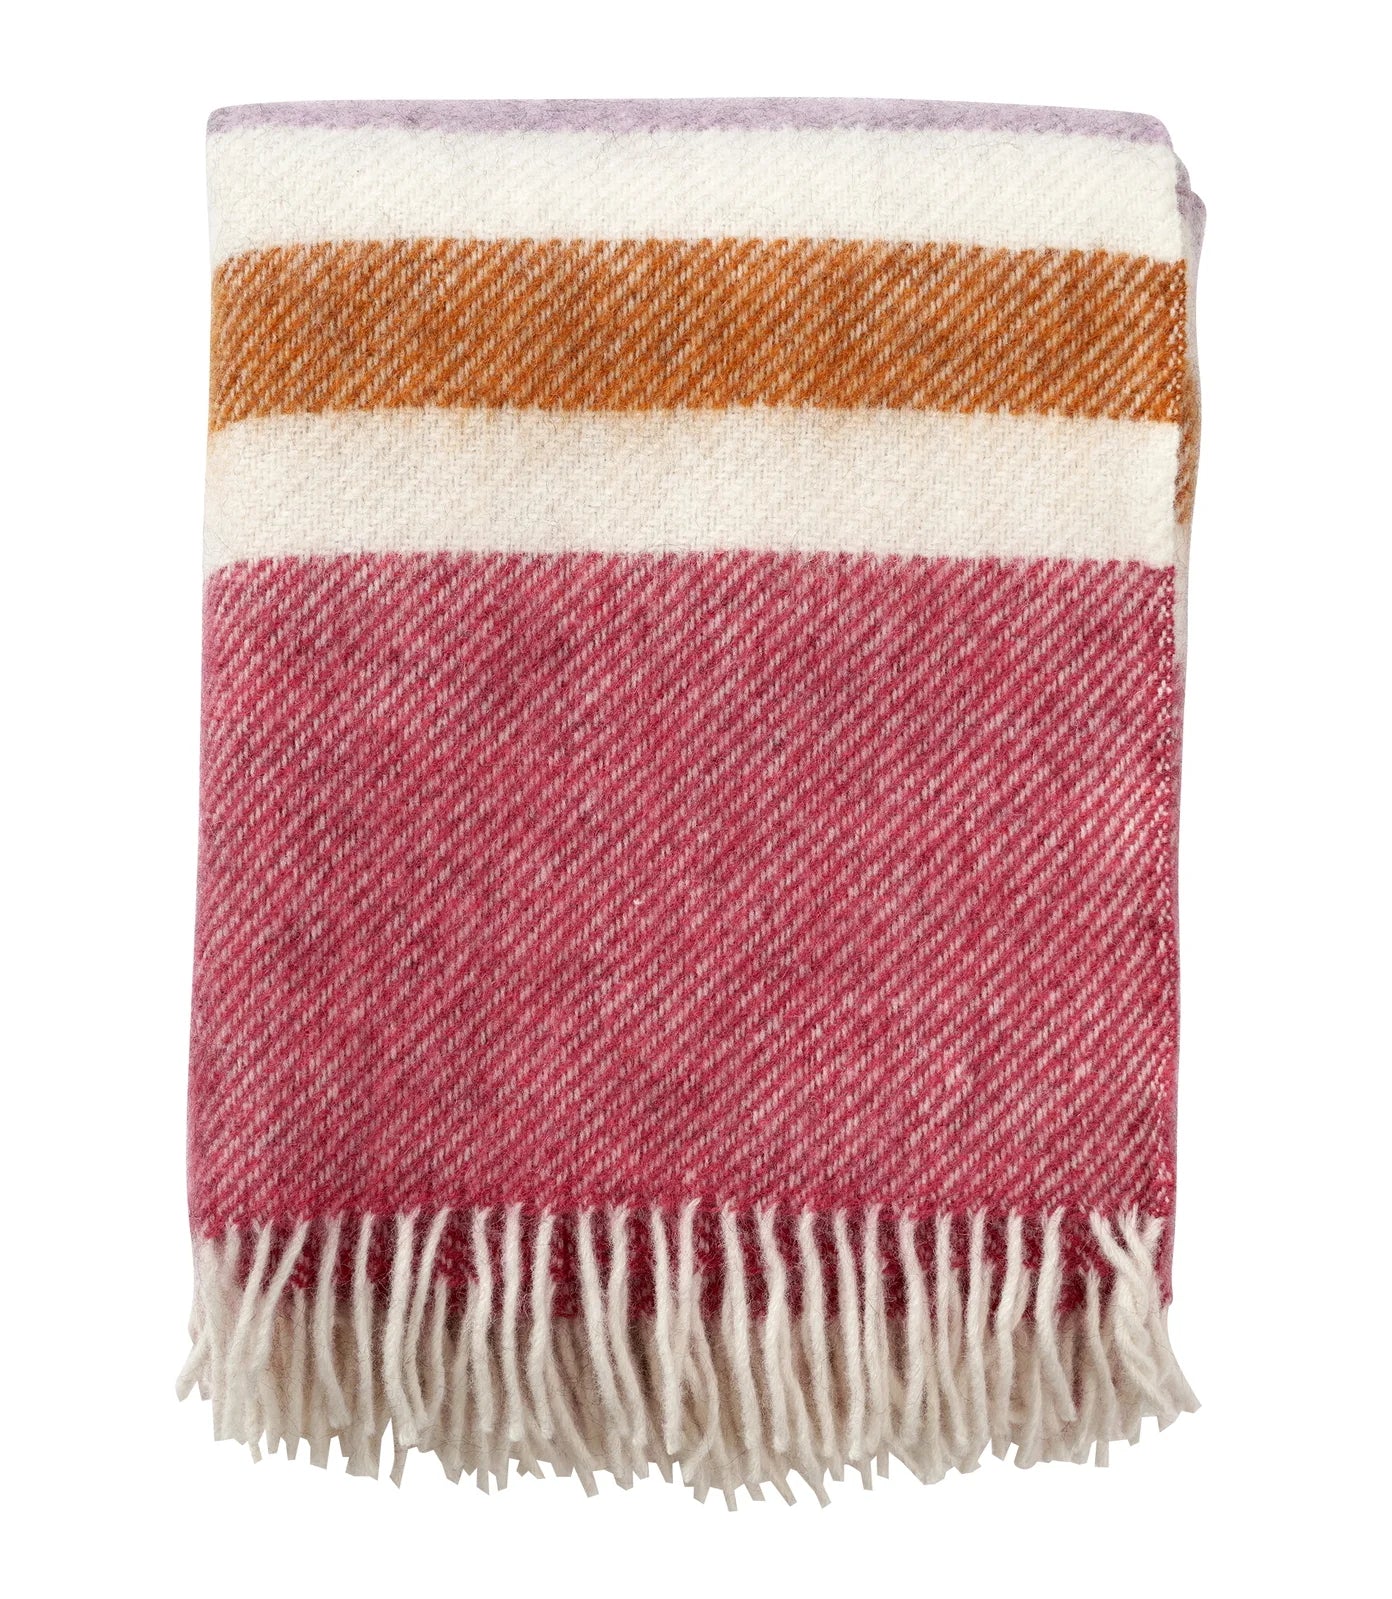 Gotland stripe Wool Throw